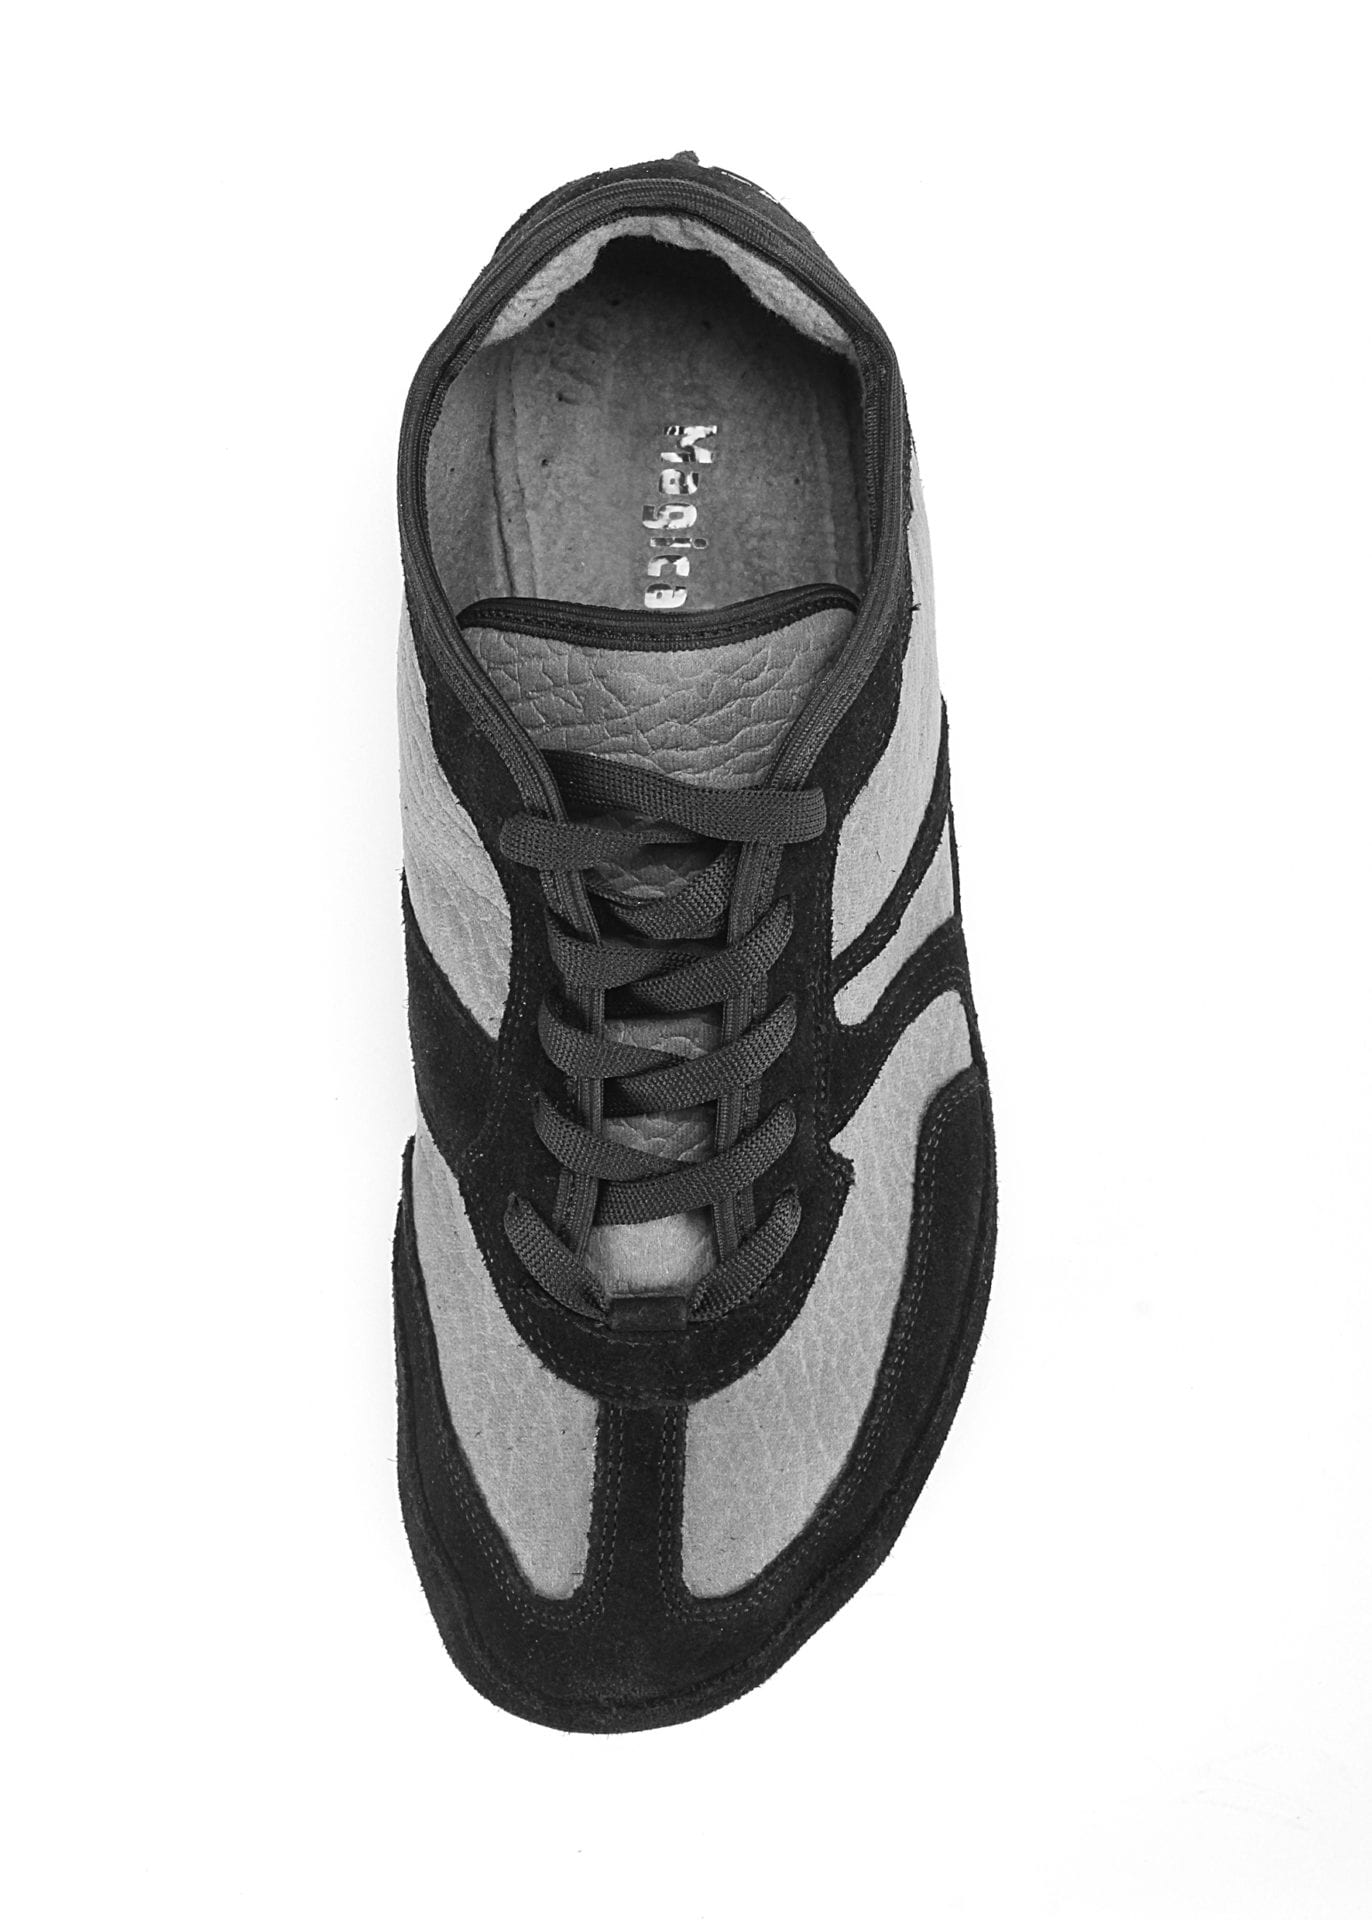 Barfußschuh-Hersteller Magical Shoes Explorer Kodiak Barfußschuhe für natürliches und gesundes Gehen & Laufen breite Zehenbox